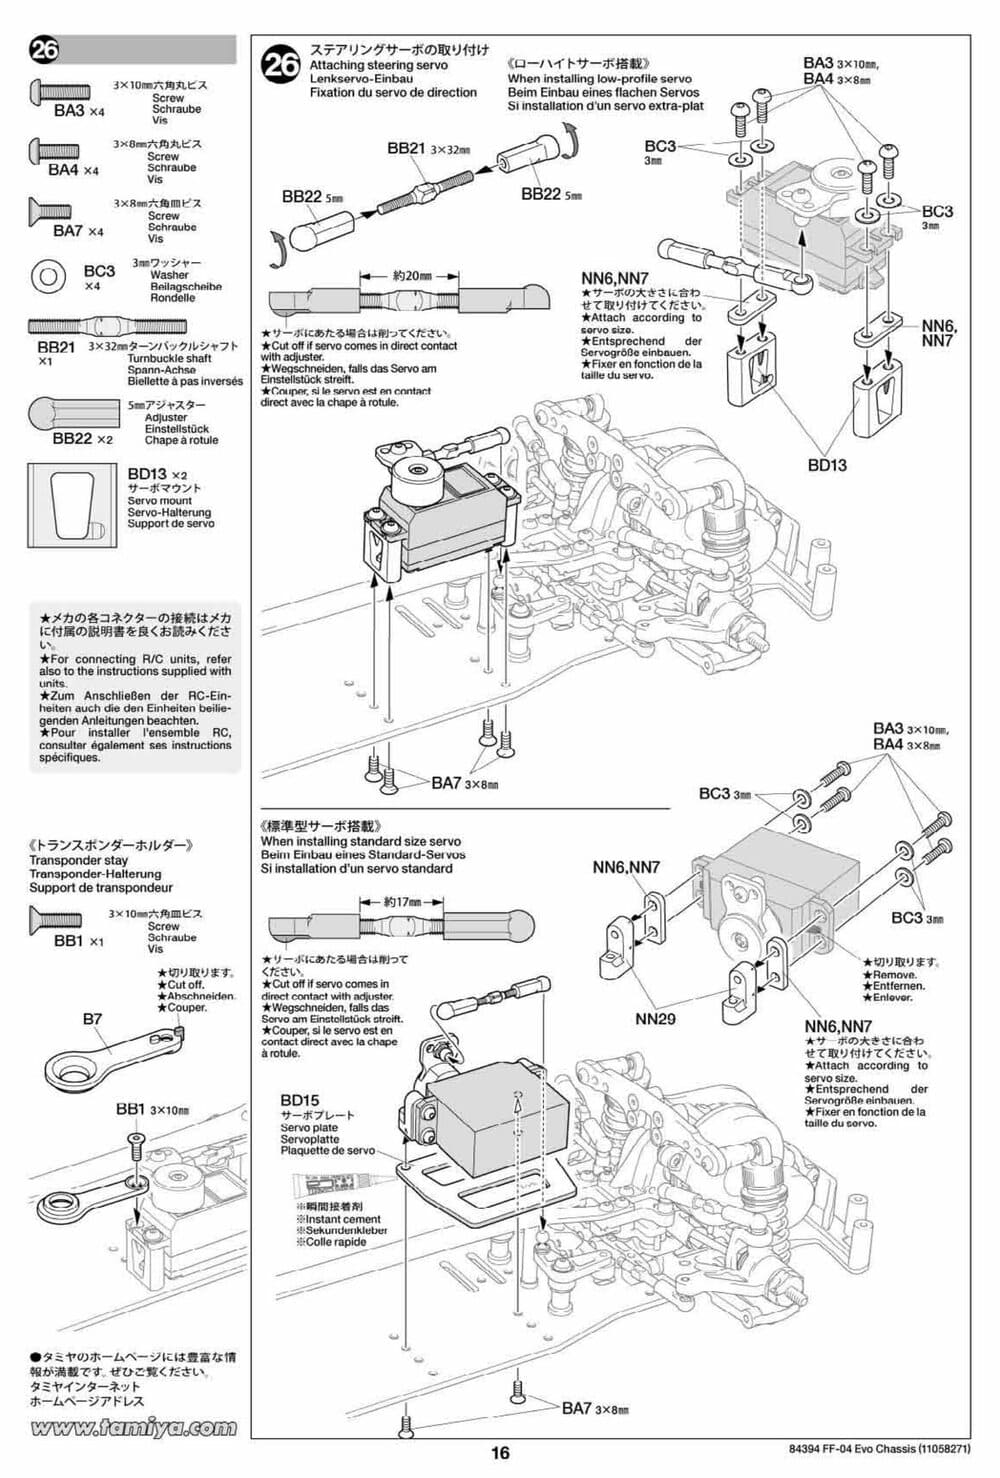 Tamiya - FF-04 Evo Chassis - Manual - Page 16